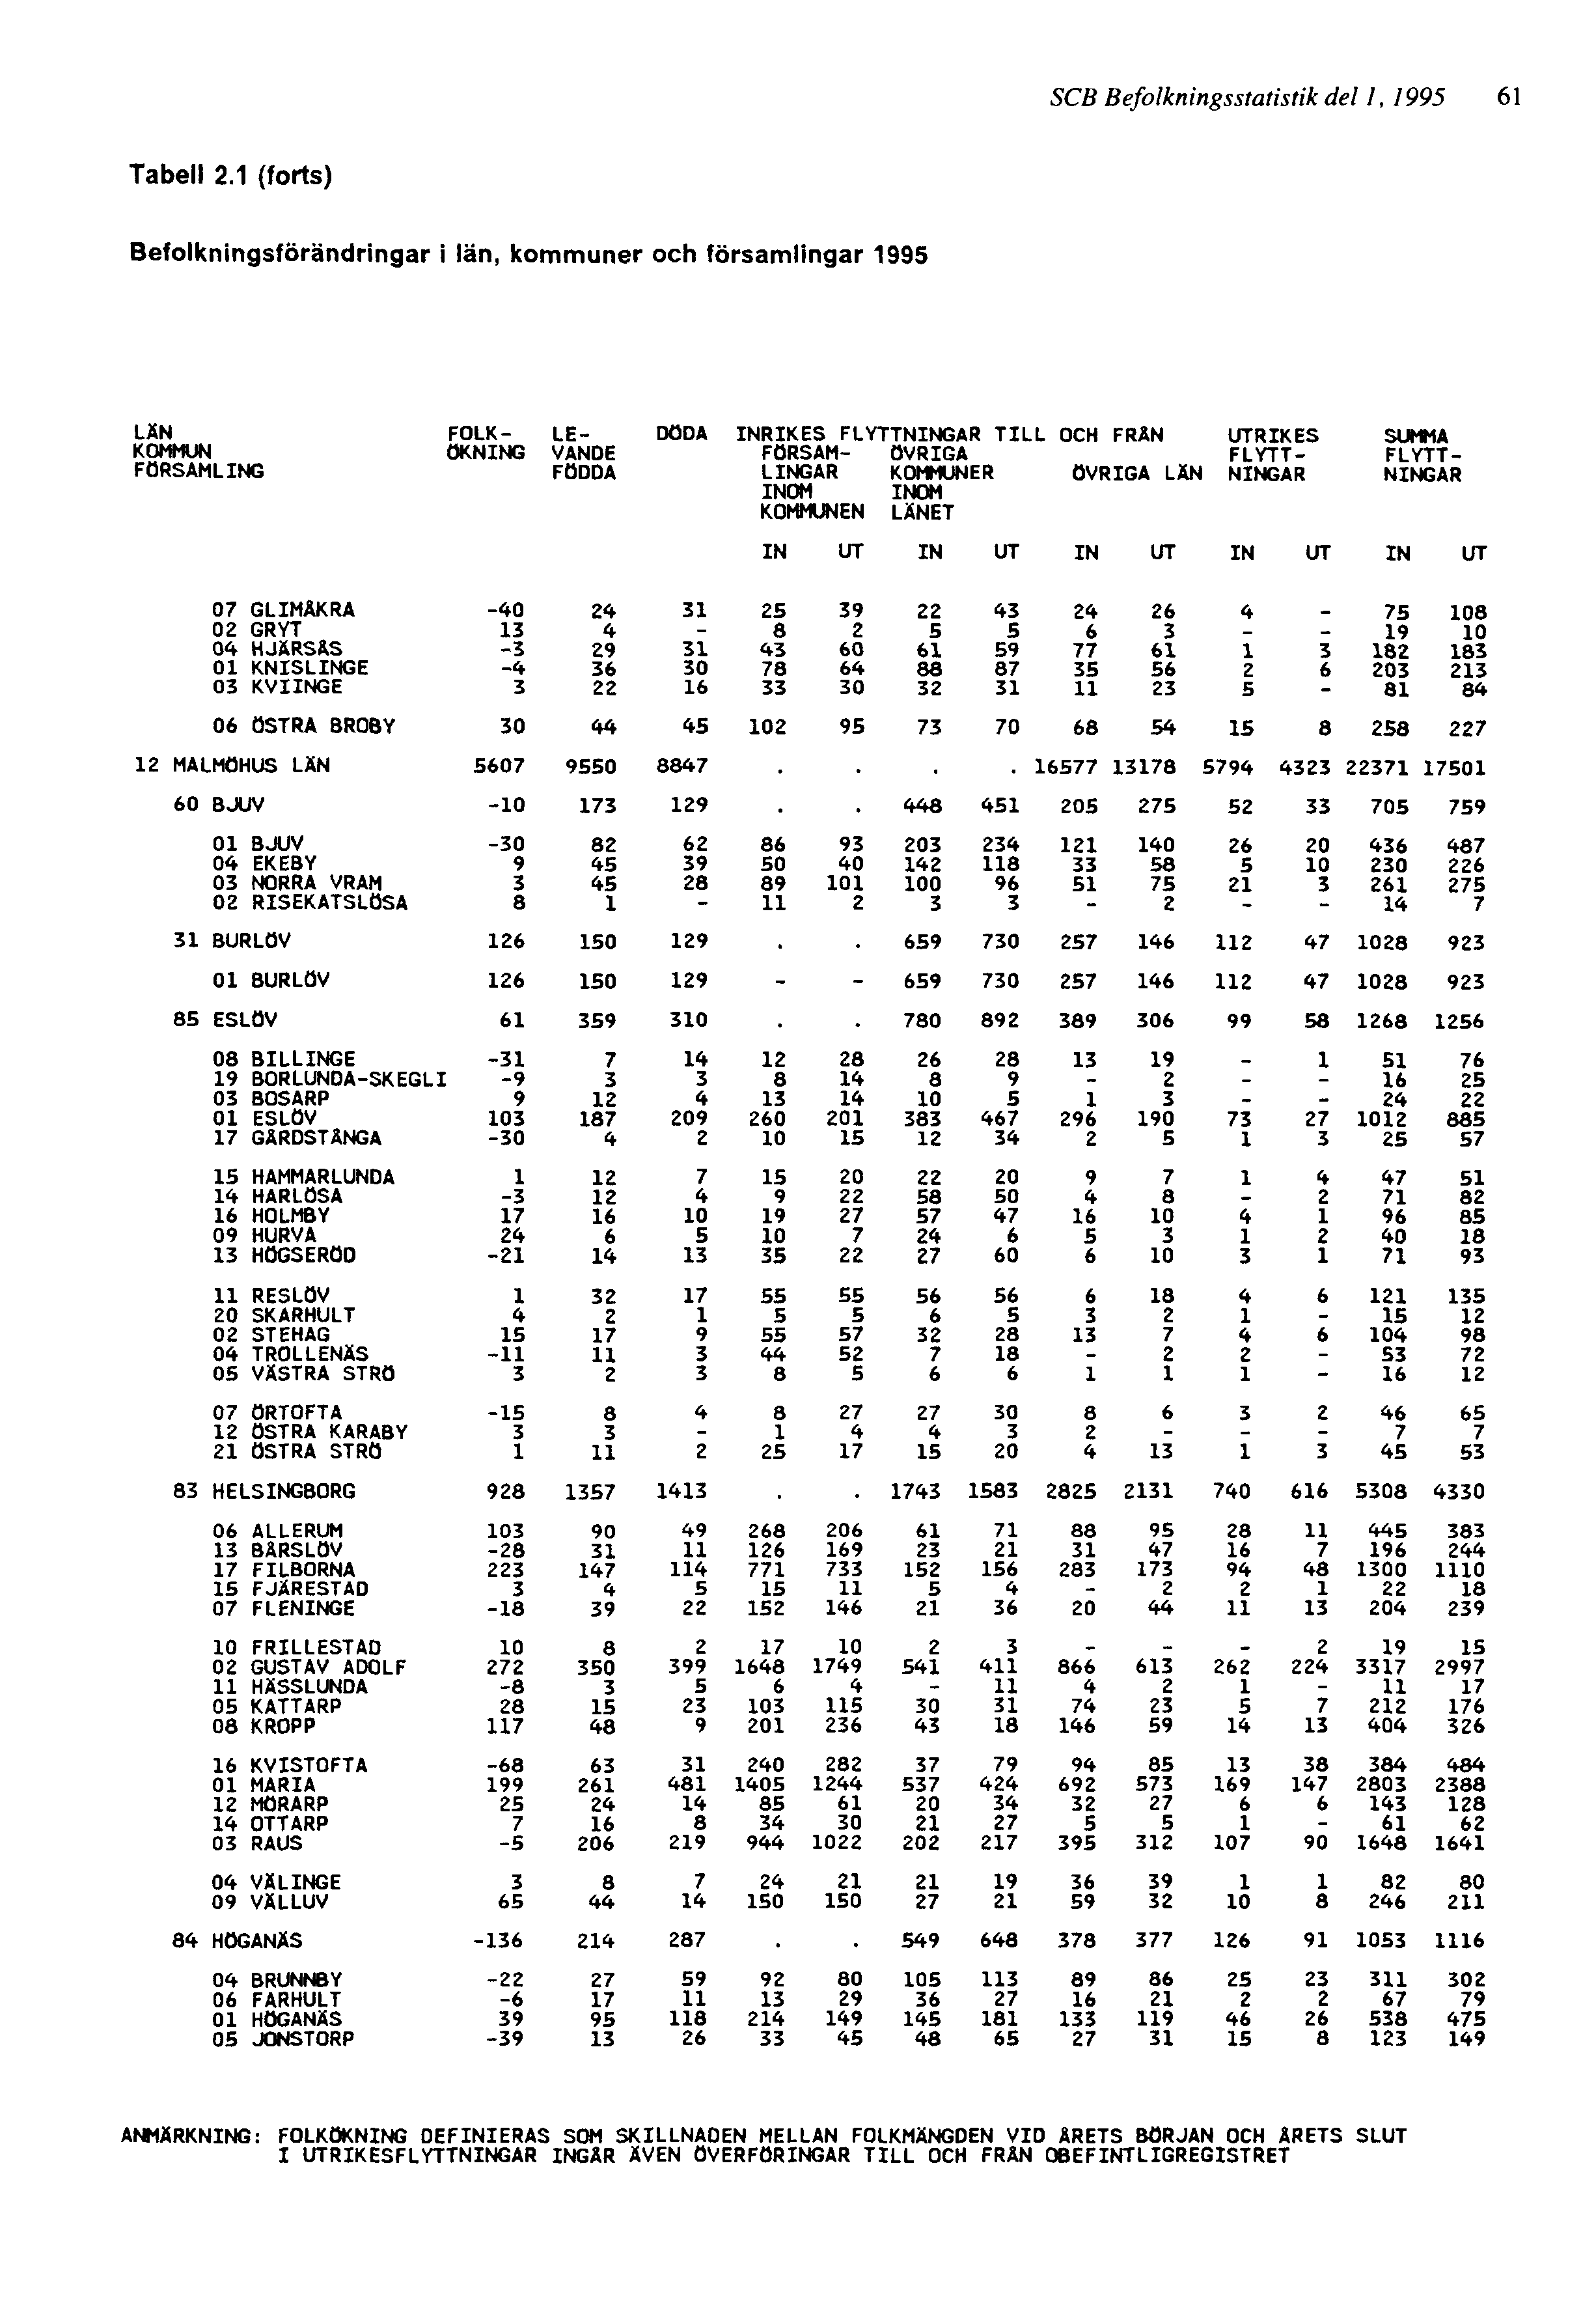 SCB Befolkningsstatistik del 1, 1995 61 ANMÄRKNING: FOLKÖKNING DEFINIERAS SOM SKILLNADEN MELLAN FOLKMÄNGDEN